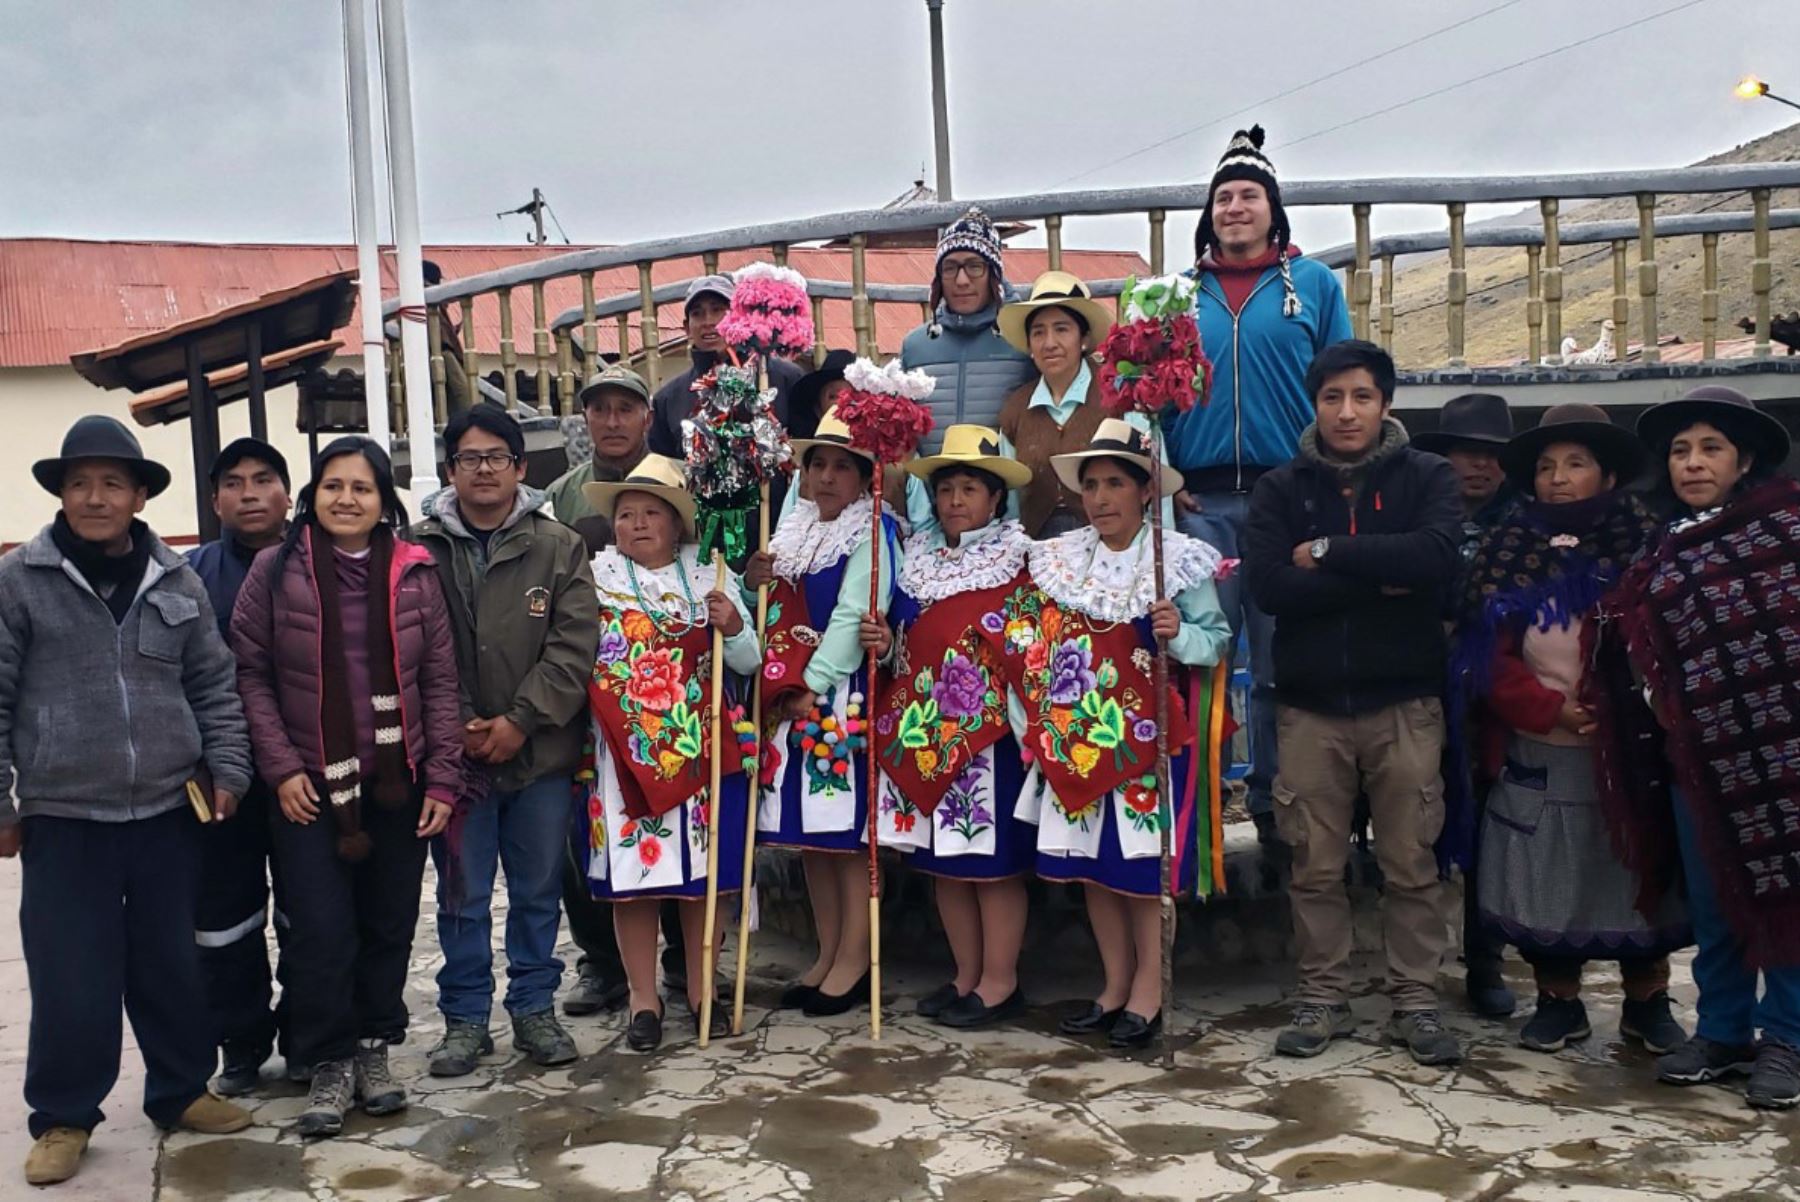 La comunidad campesina de Tanta, ubicada en la Reserva Paisajística Nor Yauyos Cochas, fue reconocida oficialmente como uno de los destinos de turismo comunitario del país por el Ministerio de Comercio Exterior y Turismo (Mincetur).